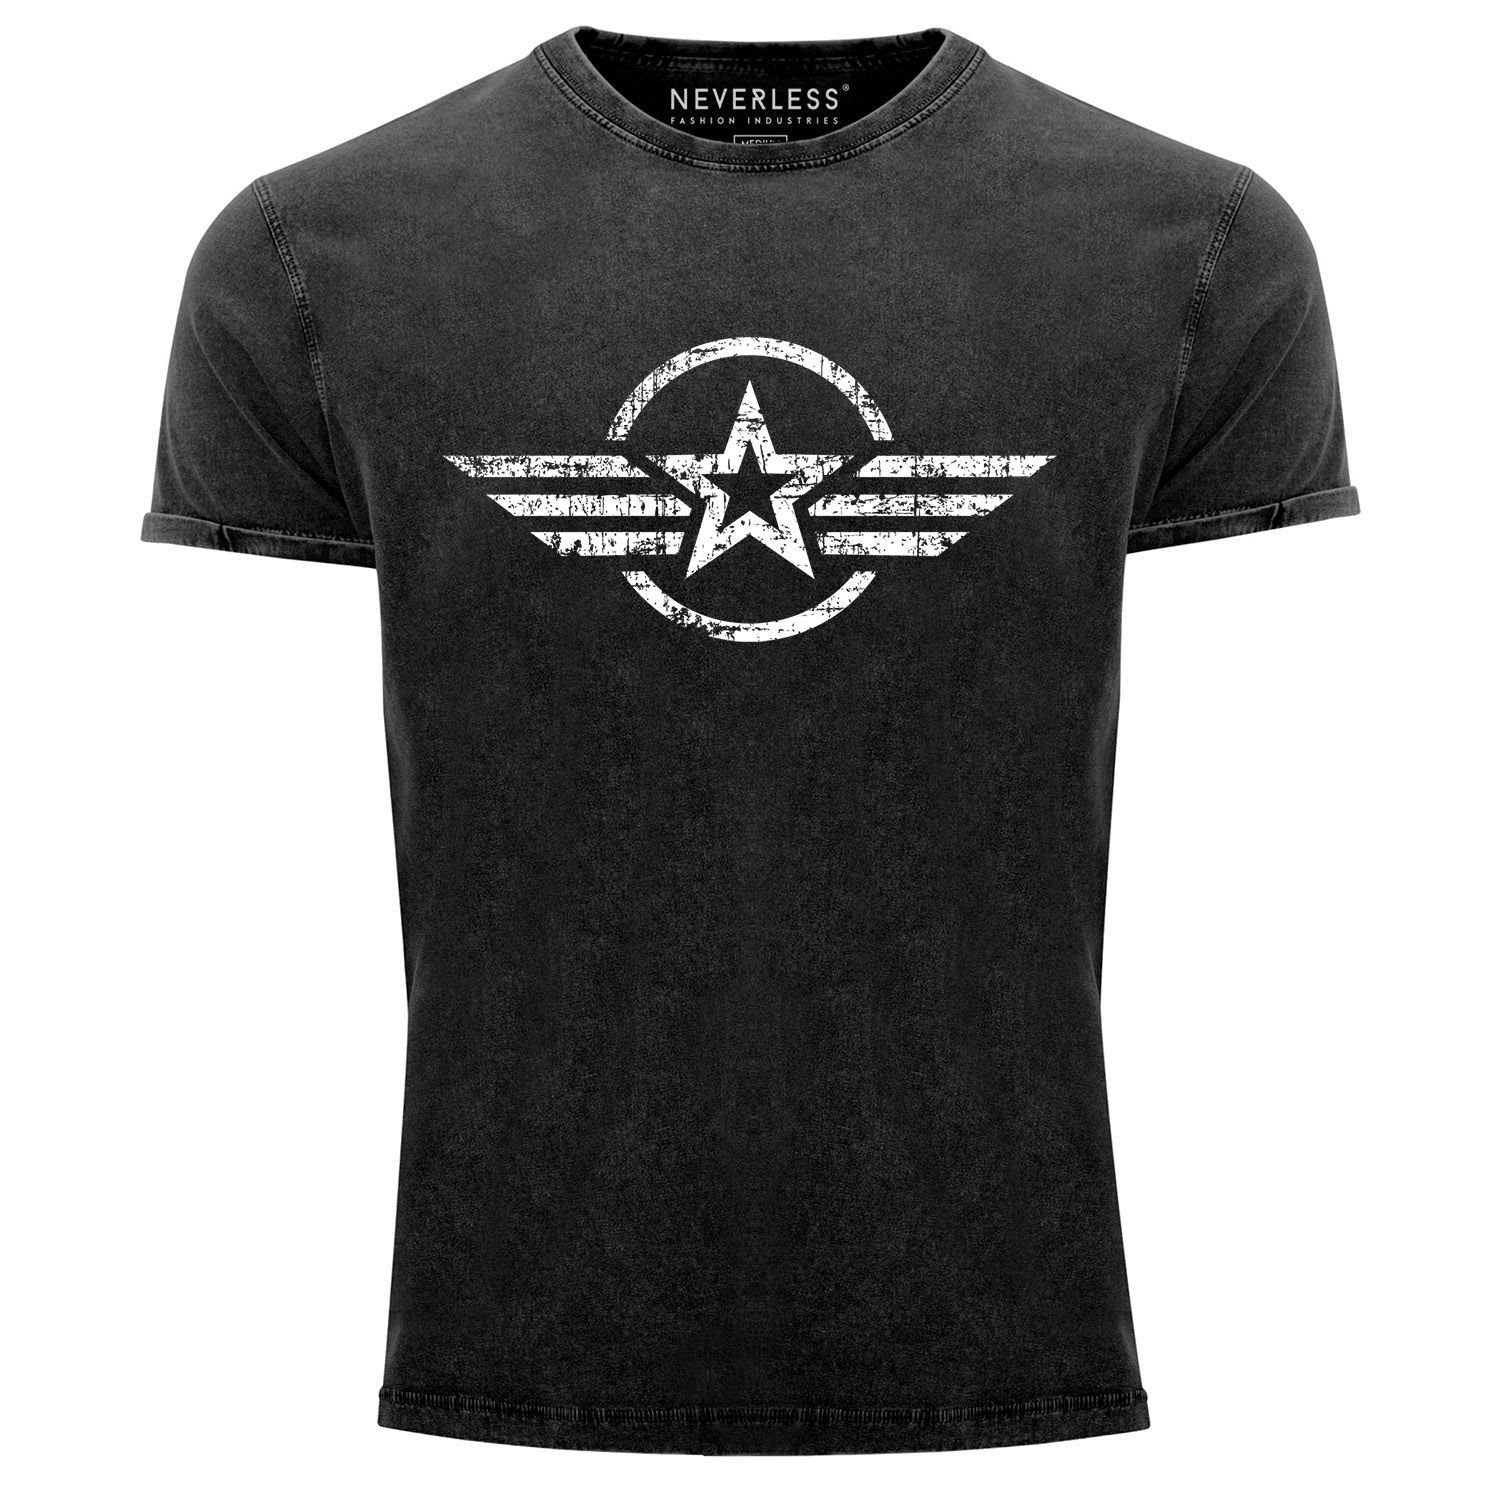 Neverless Print-Shirt T-Shirt Aufdruck Military Shirt Aufdruck Vintage Stern Slim schwarz Fit Army Neverless® Printshirt Used Herren Look Print mit Airforce